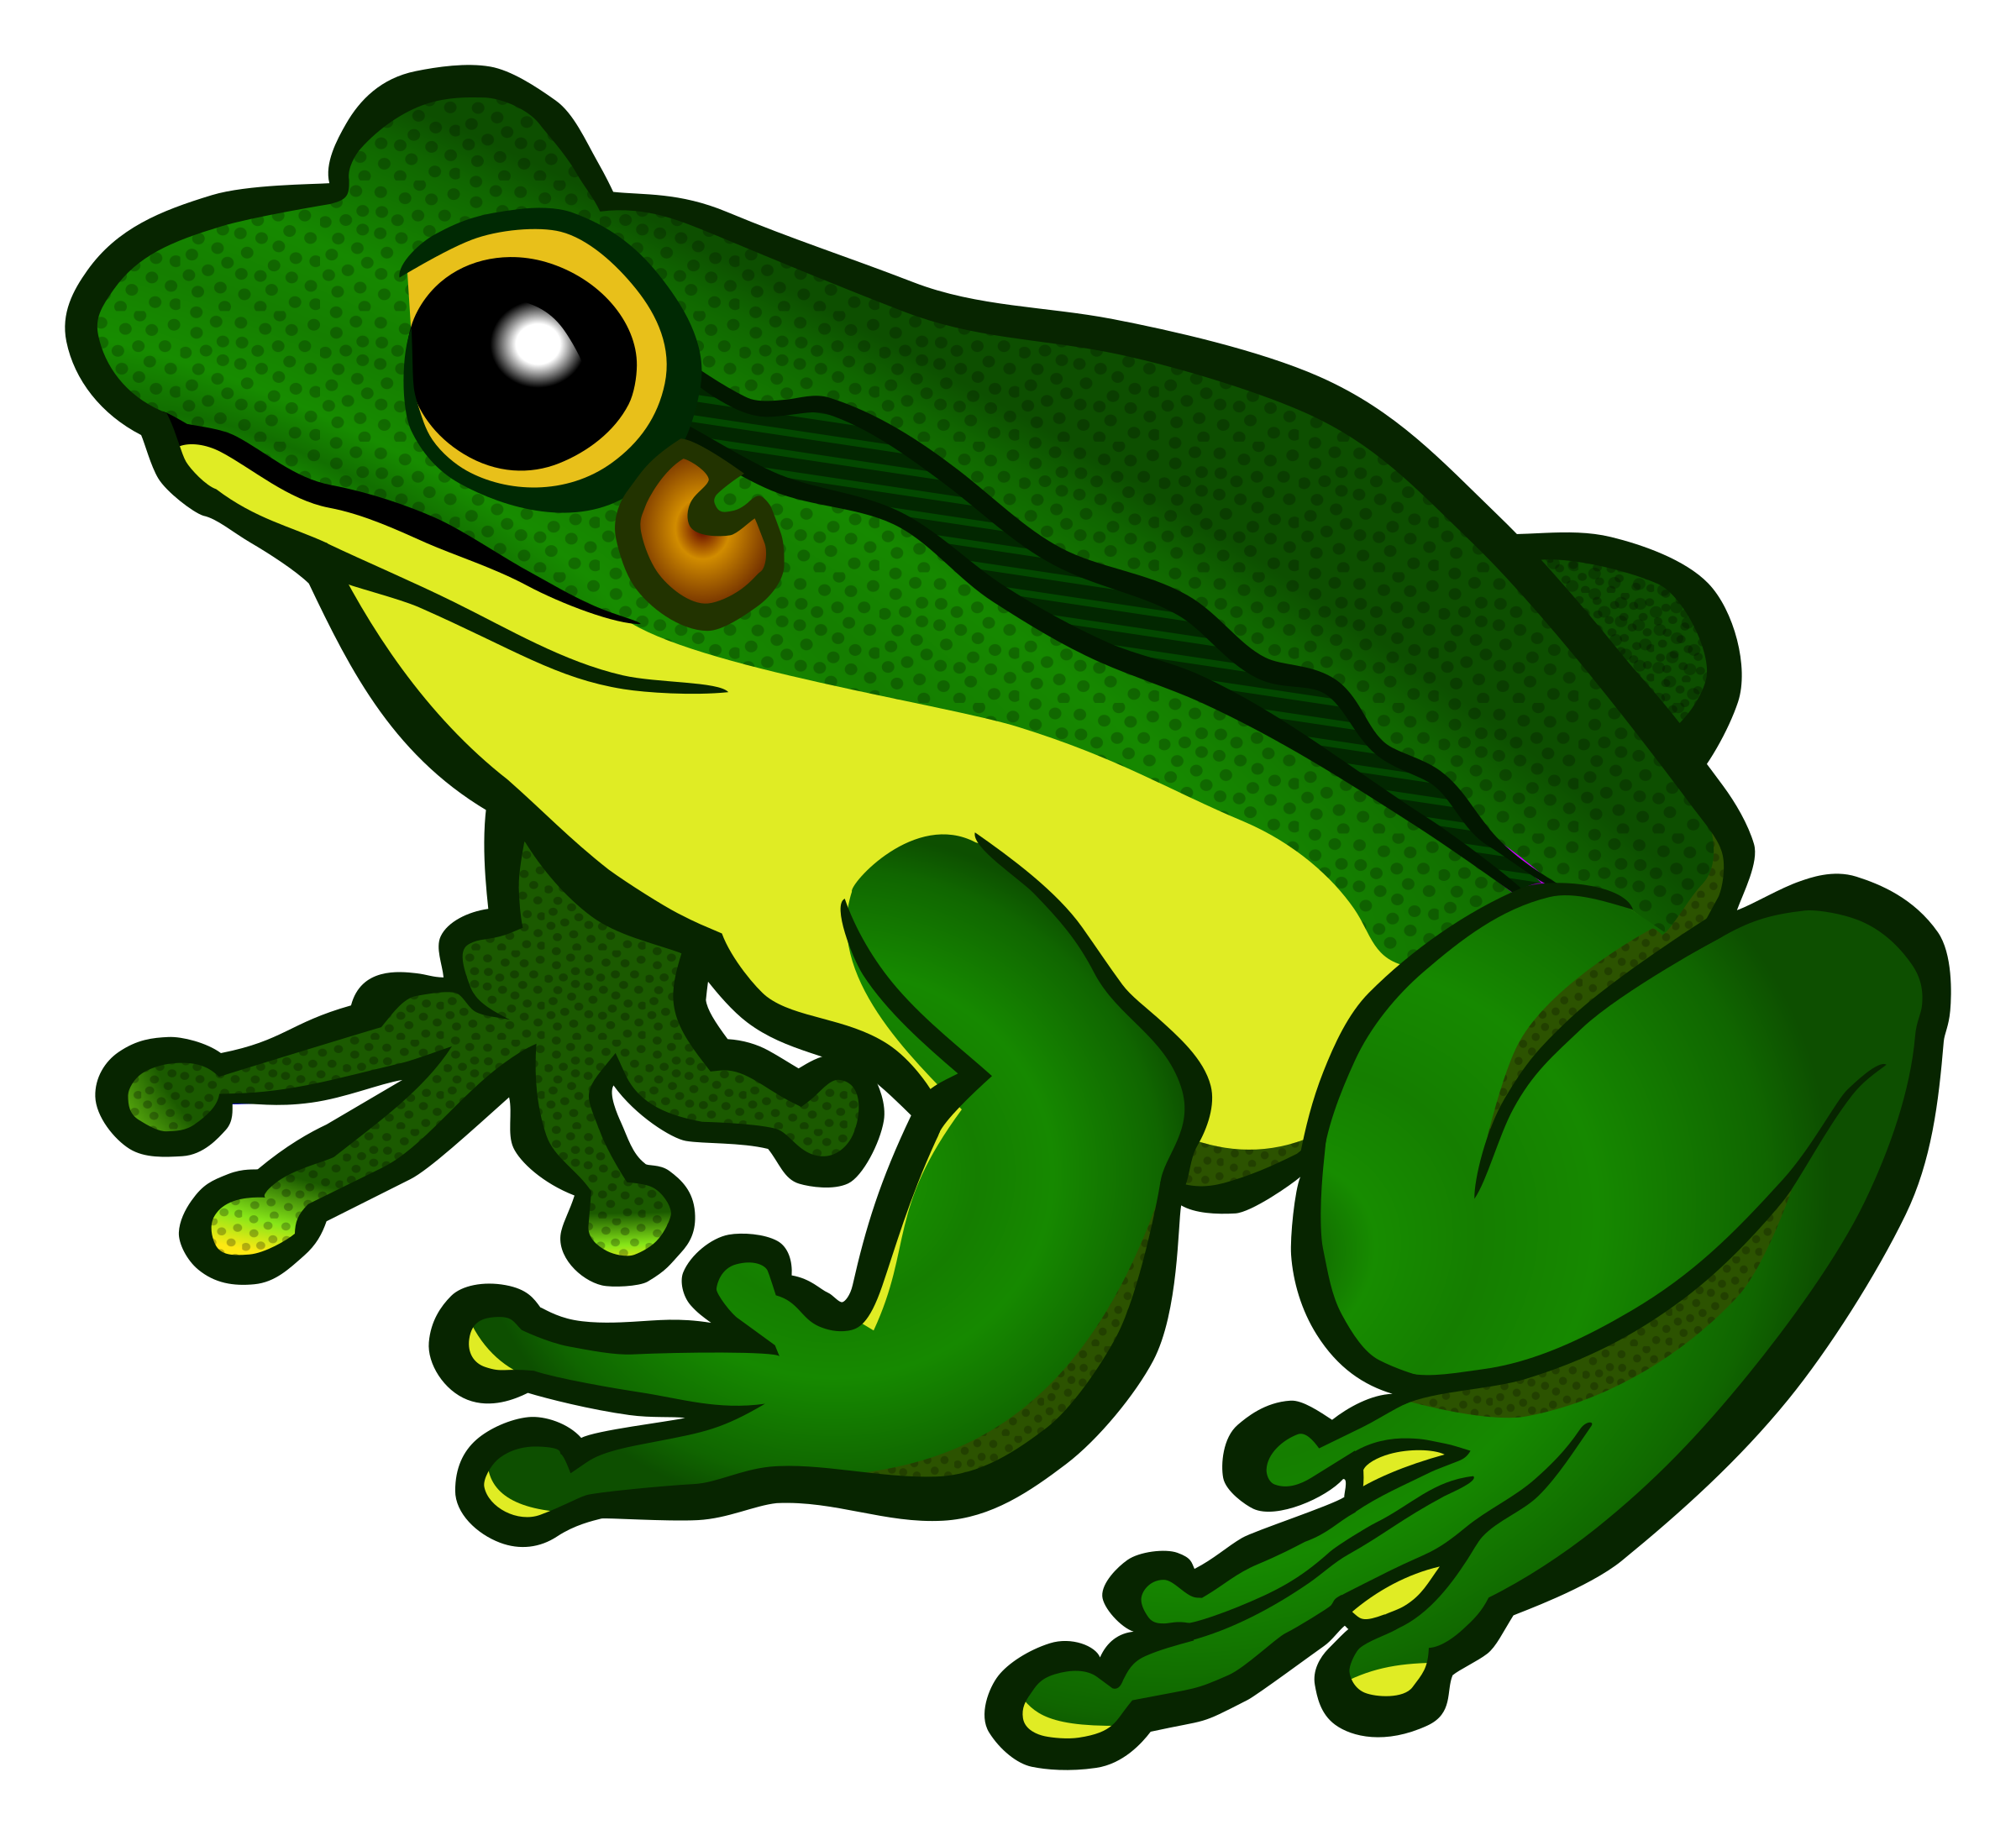 Frog Transparent Background   Frog Png - Frog, Transparent background PNG HD thumbnail